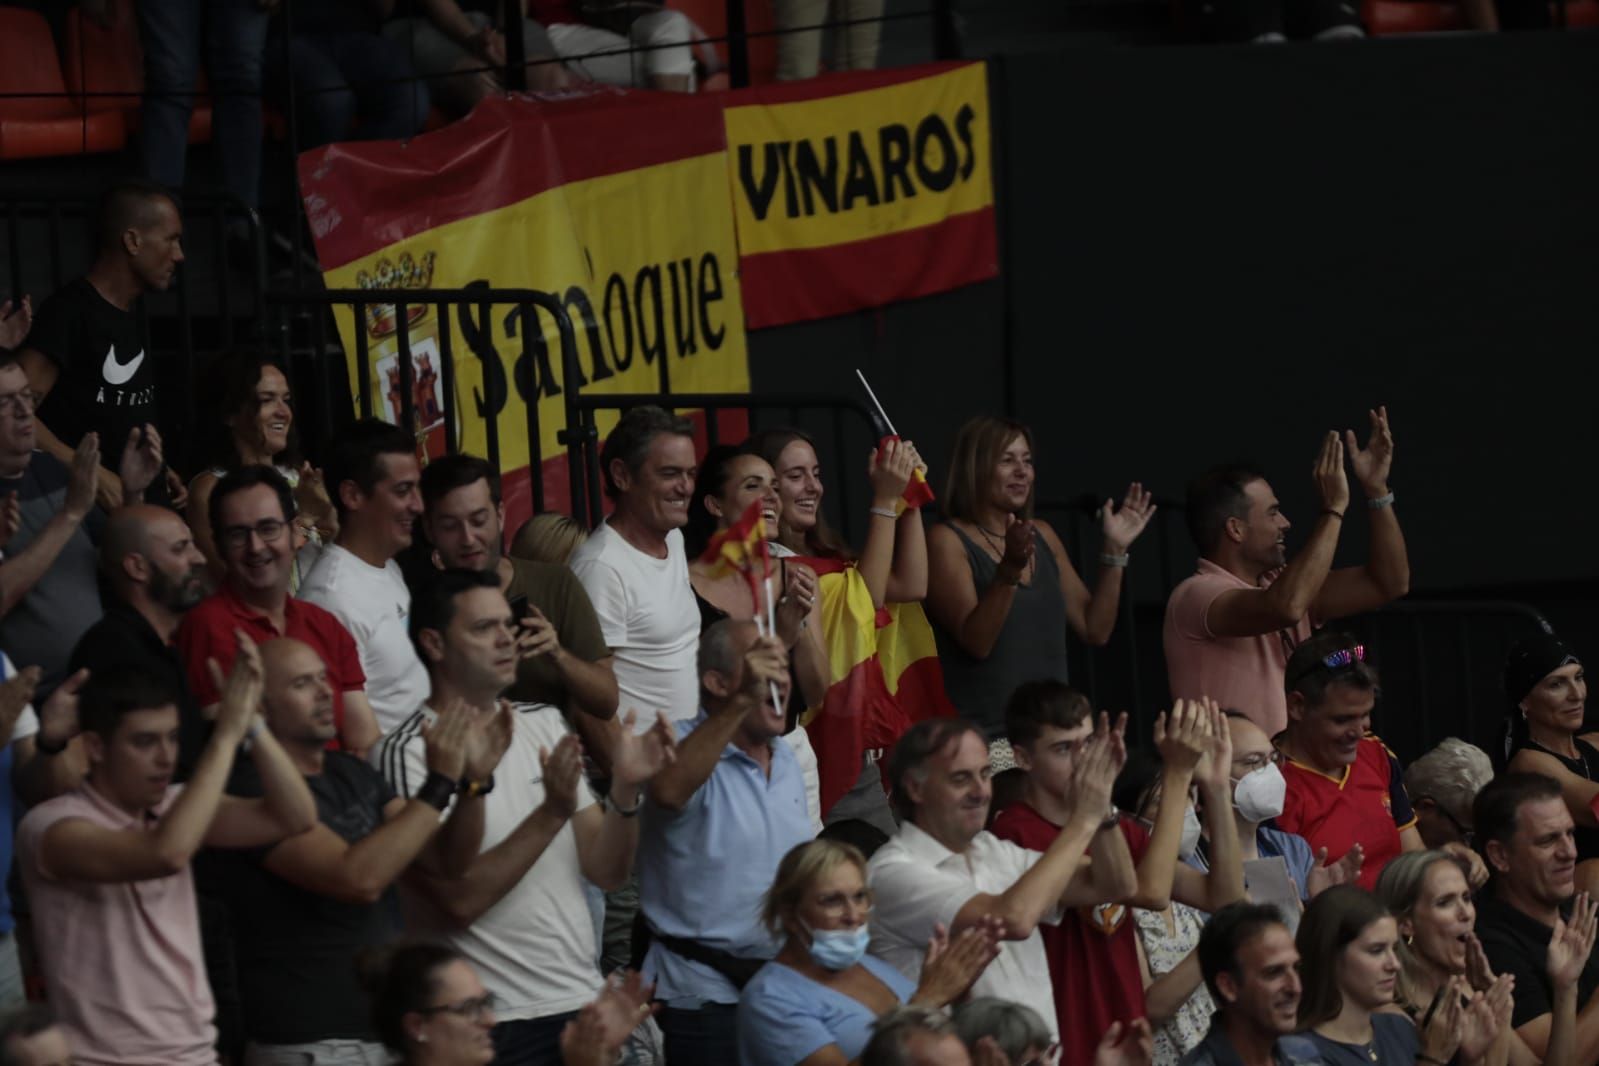 Las mejores imágenes de la Copa Davis en València